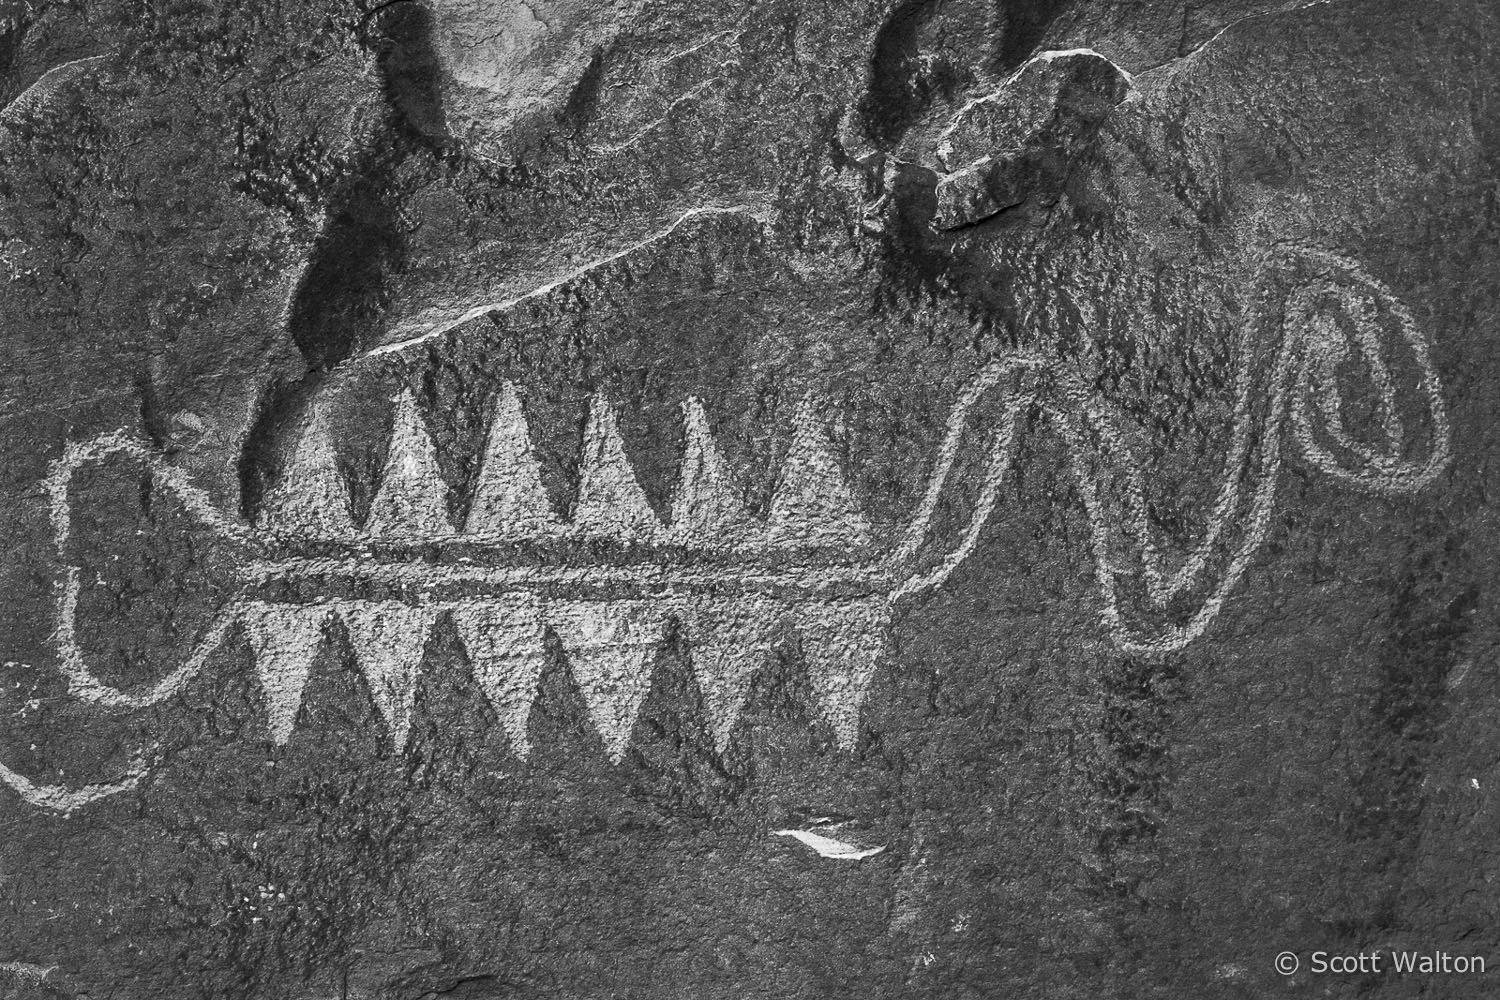 snake-petroglyph-bw-escalante-river-canyon-utah.jpg